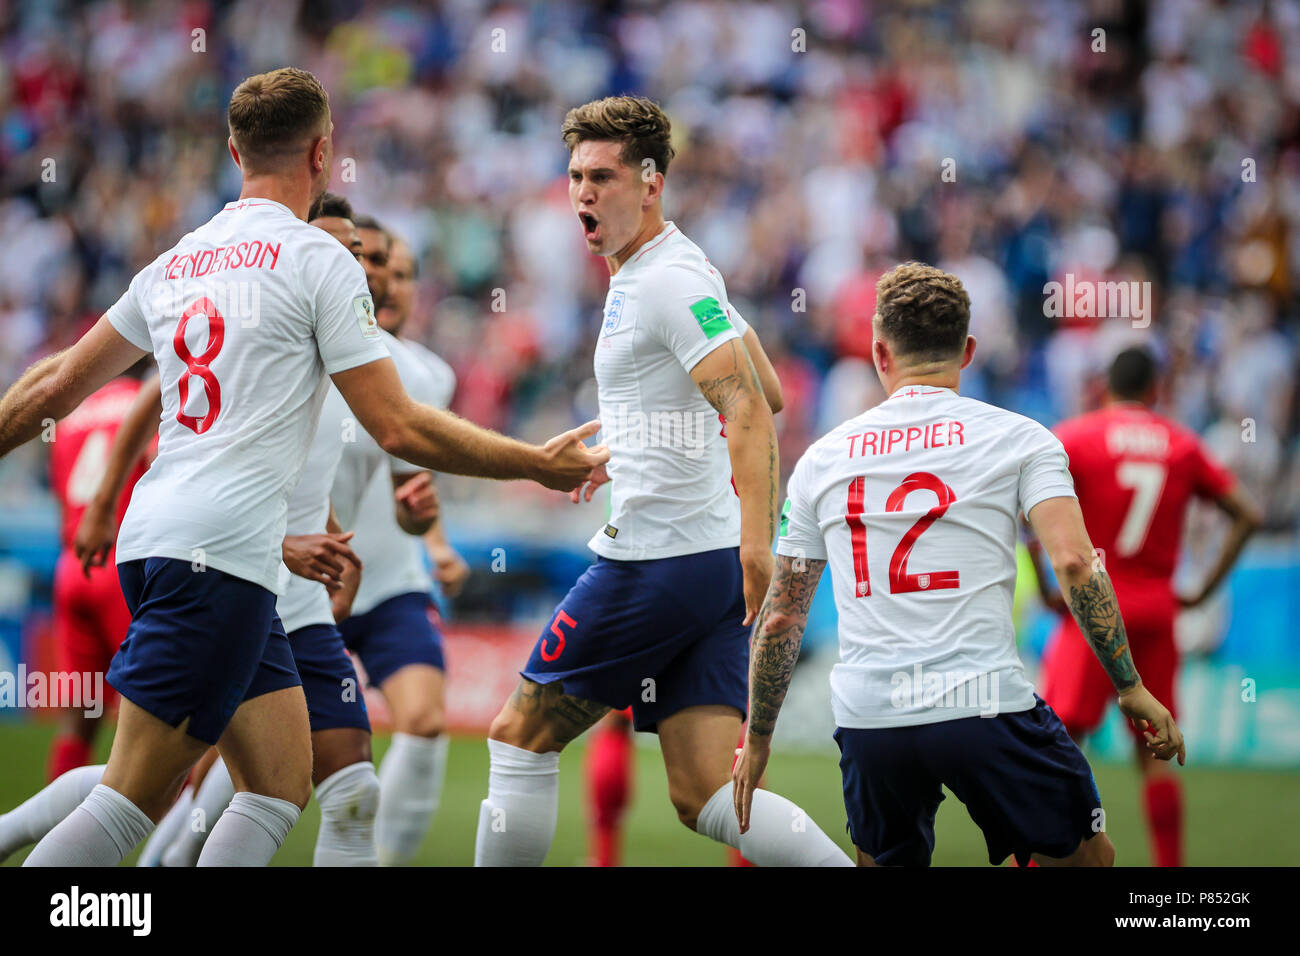 John STONES da Inglaterra marca gol durante jogo entre INGLATERRA X PANAMÁ  válida pela 2ª rodada do grupo G da Copa do Mundo de 2018, realizada no  Estádio de Níjni Novgorod, na